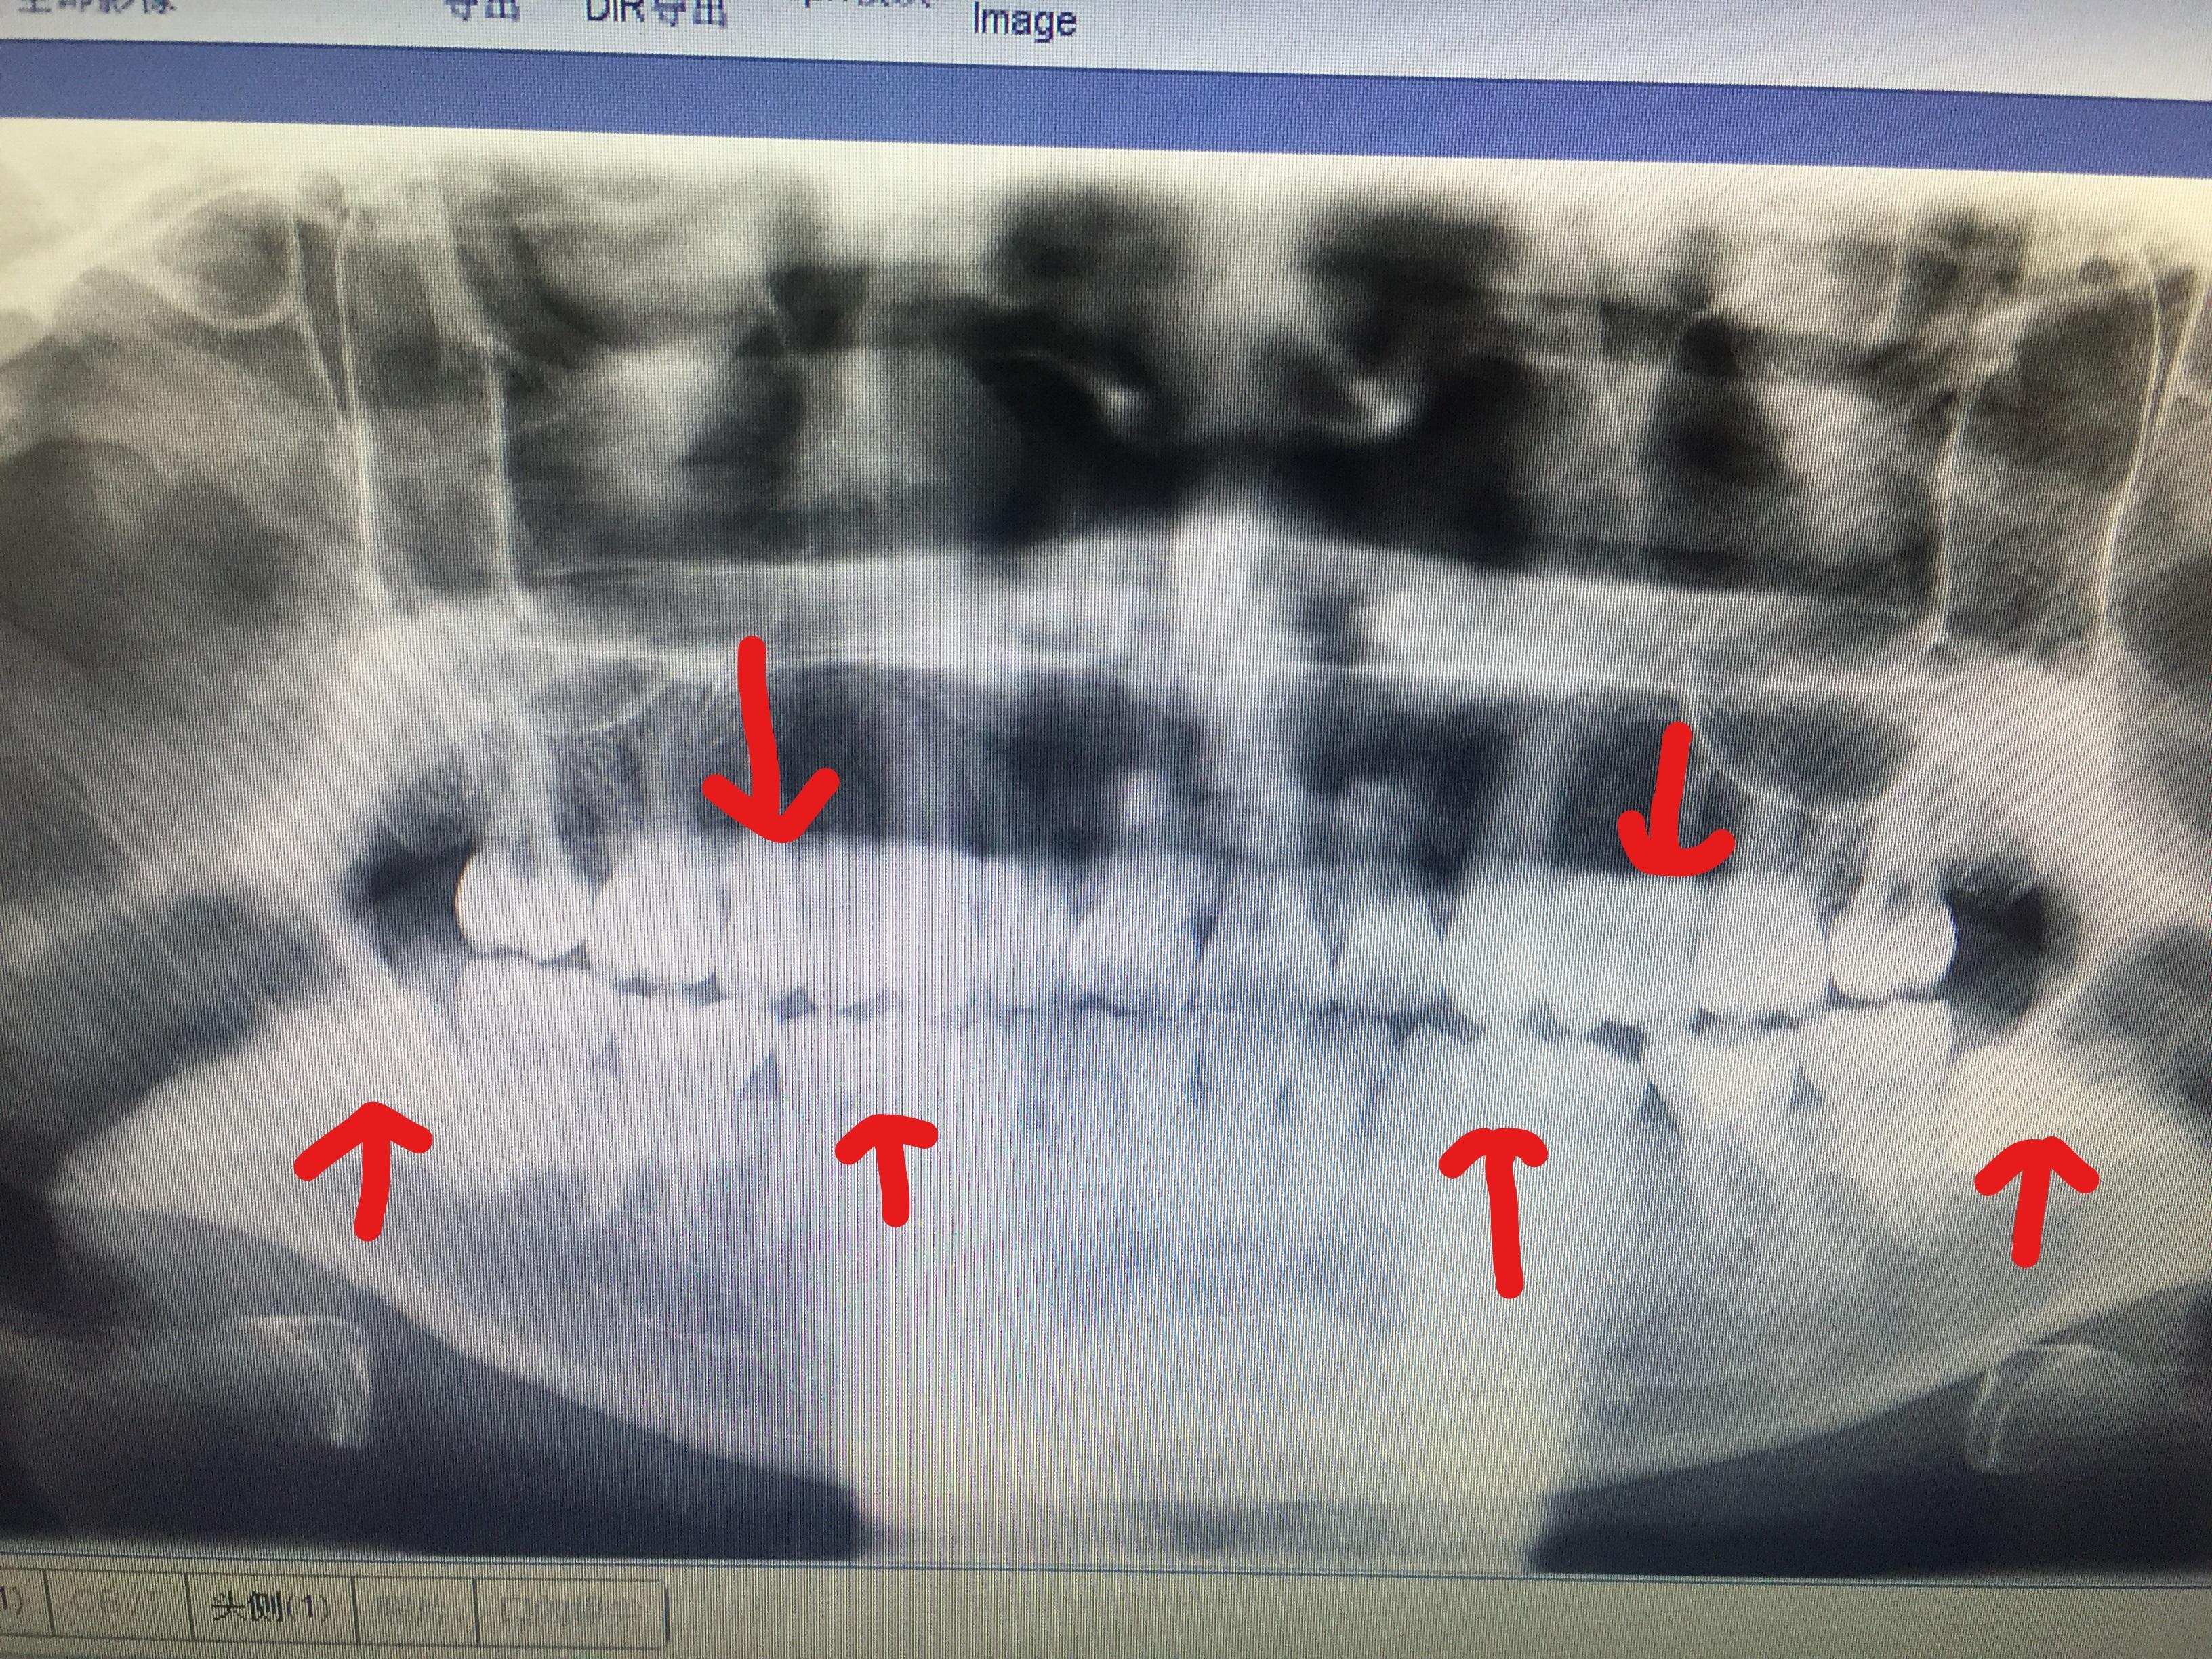 下面是牙齿x光的照片:在开始正畸之前,做了很长时间的功课,基本上知乎